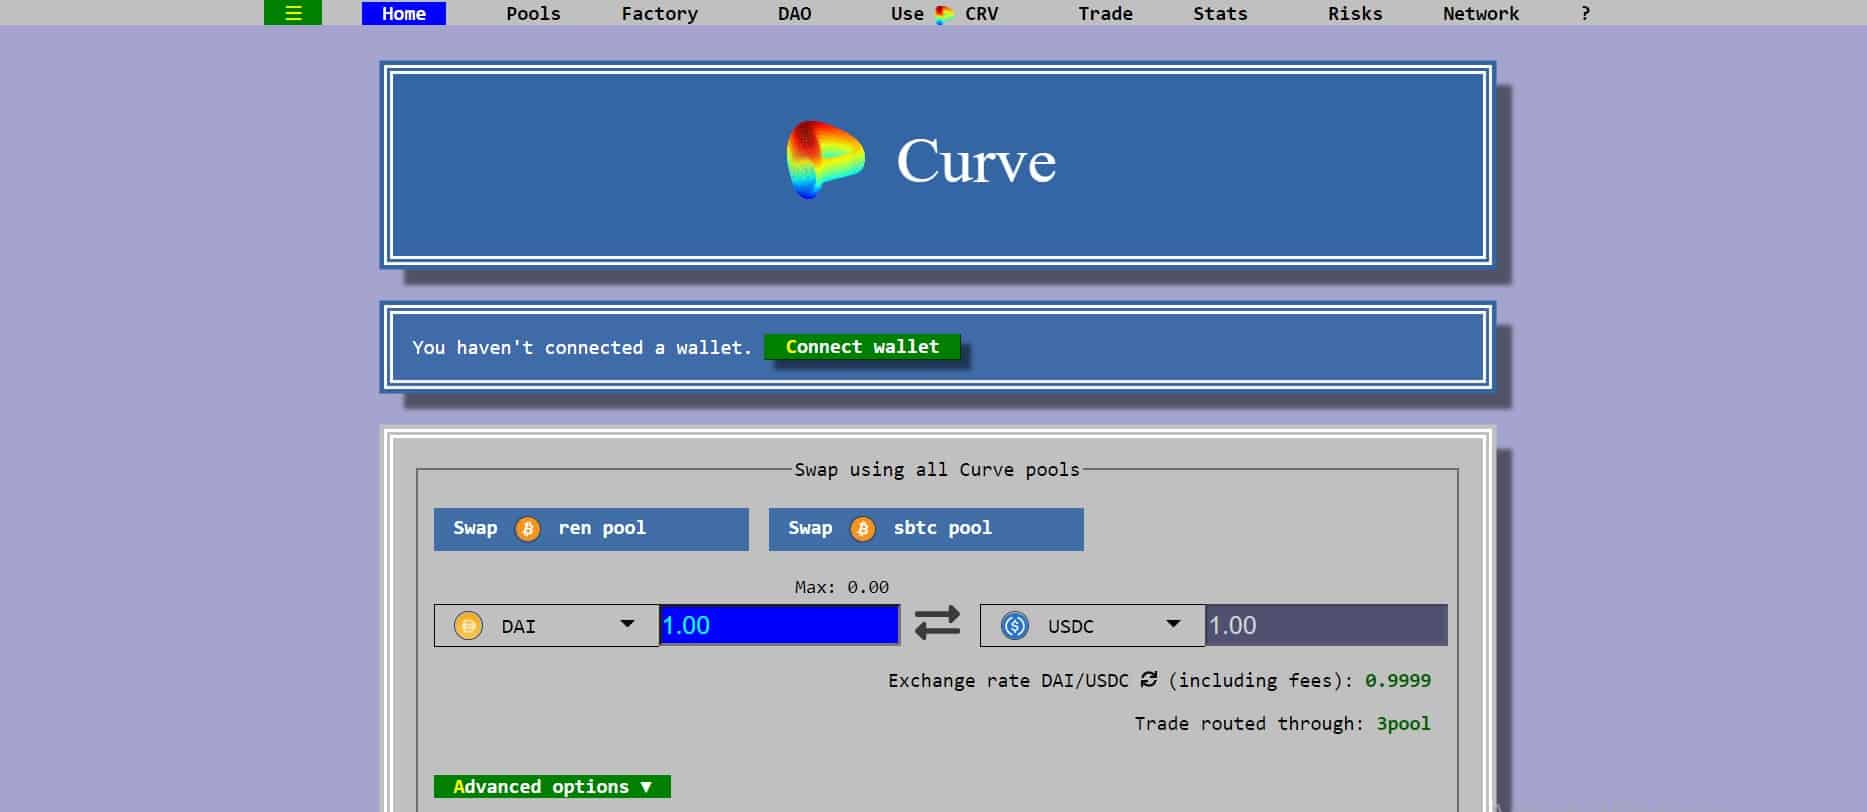 Curve Finance website